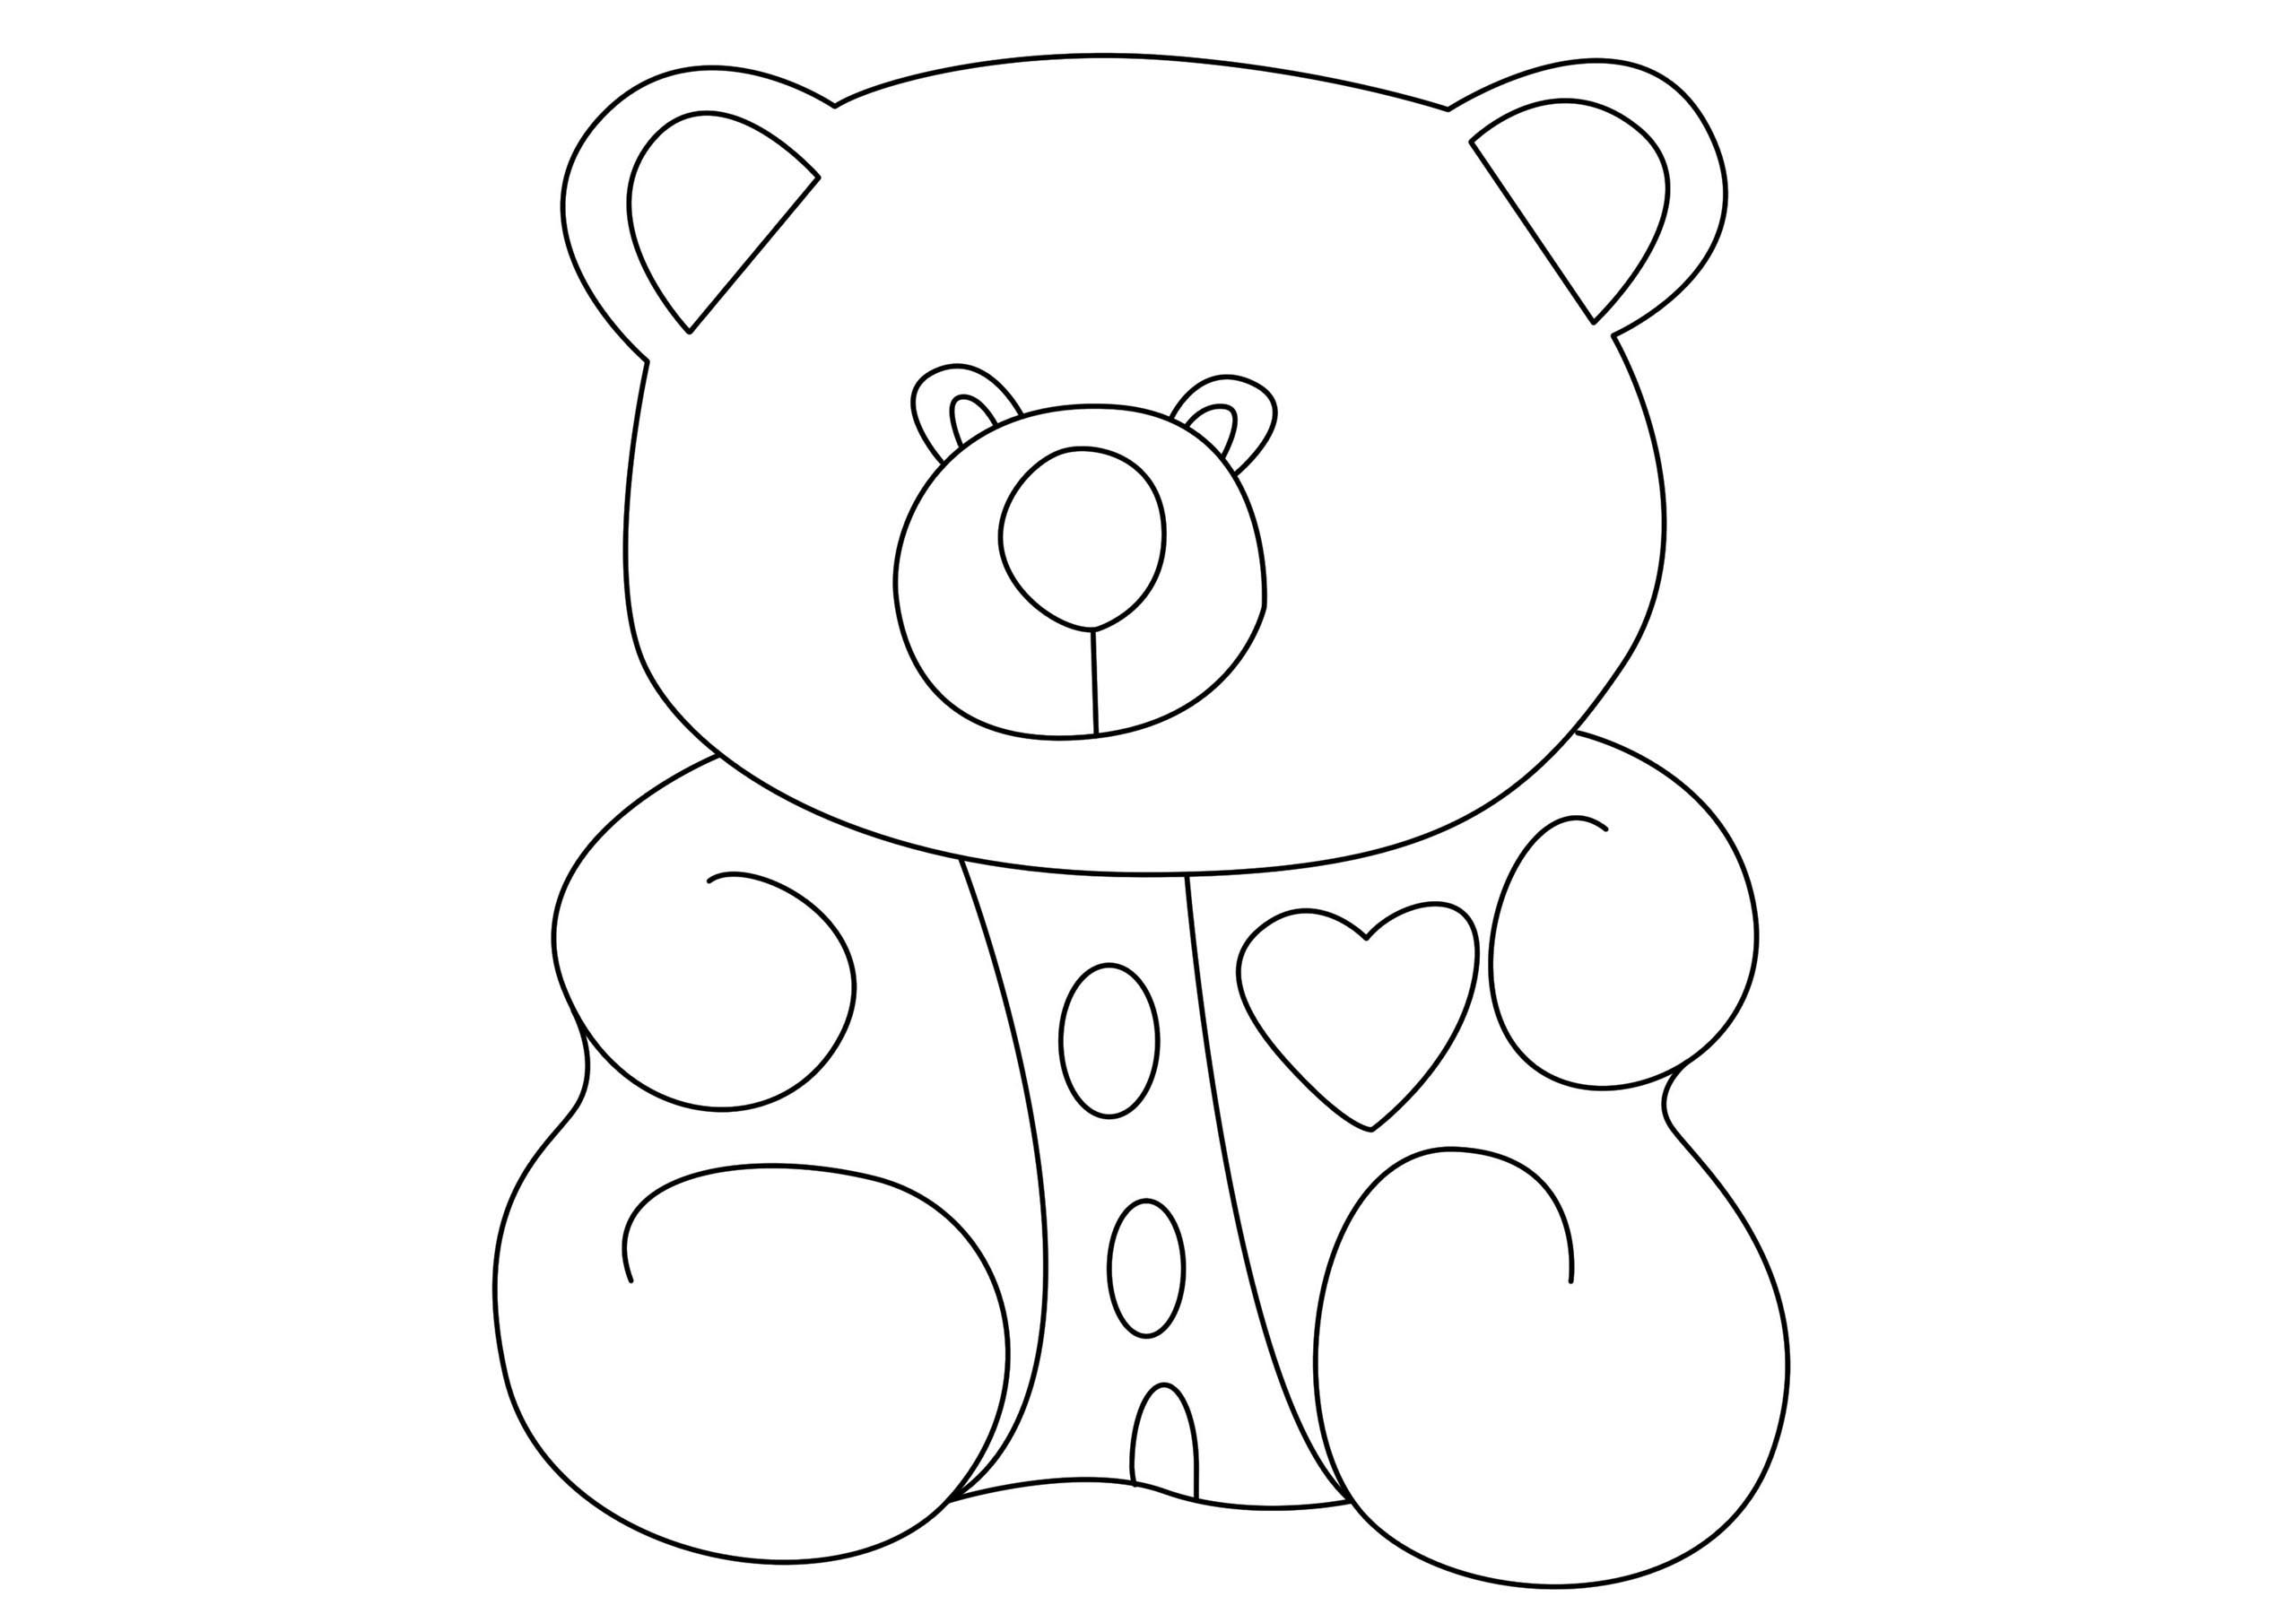 Tổng hợp các bức tranh tô màu con gấu cho bé